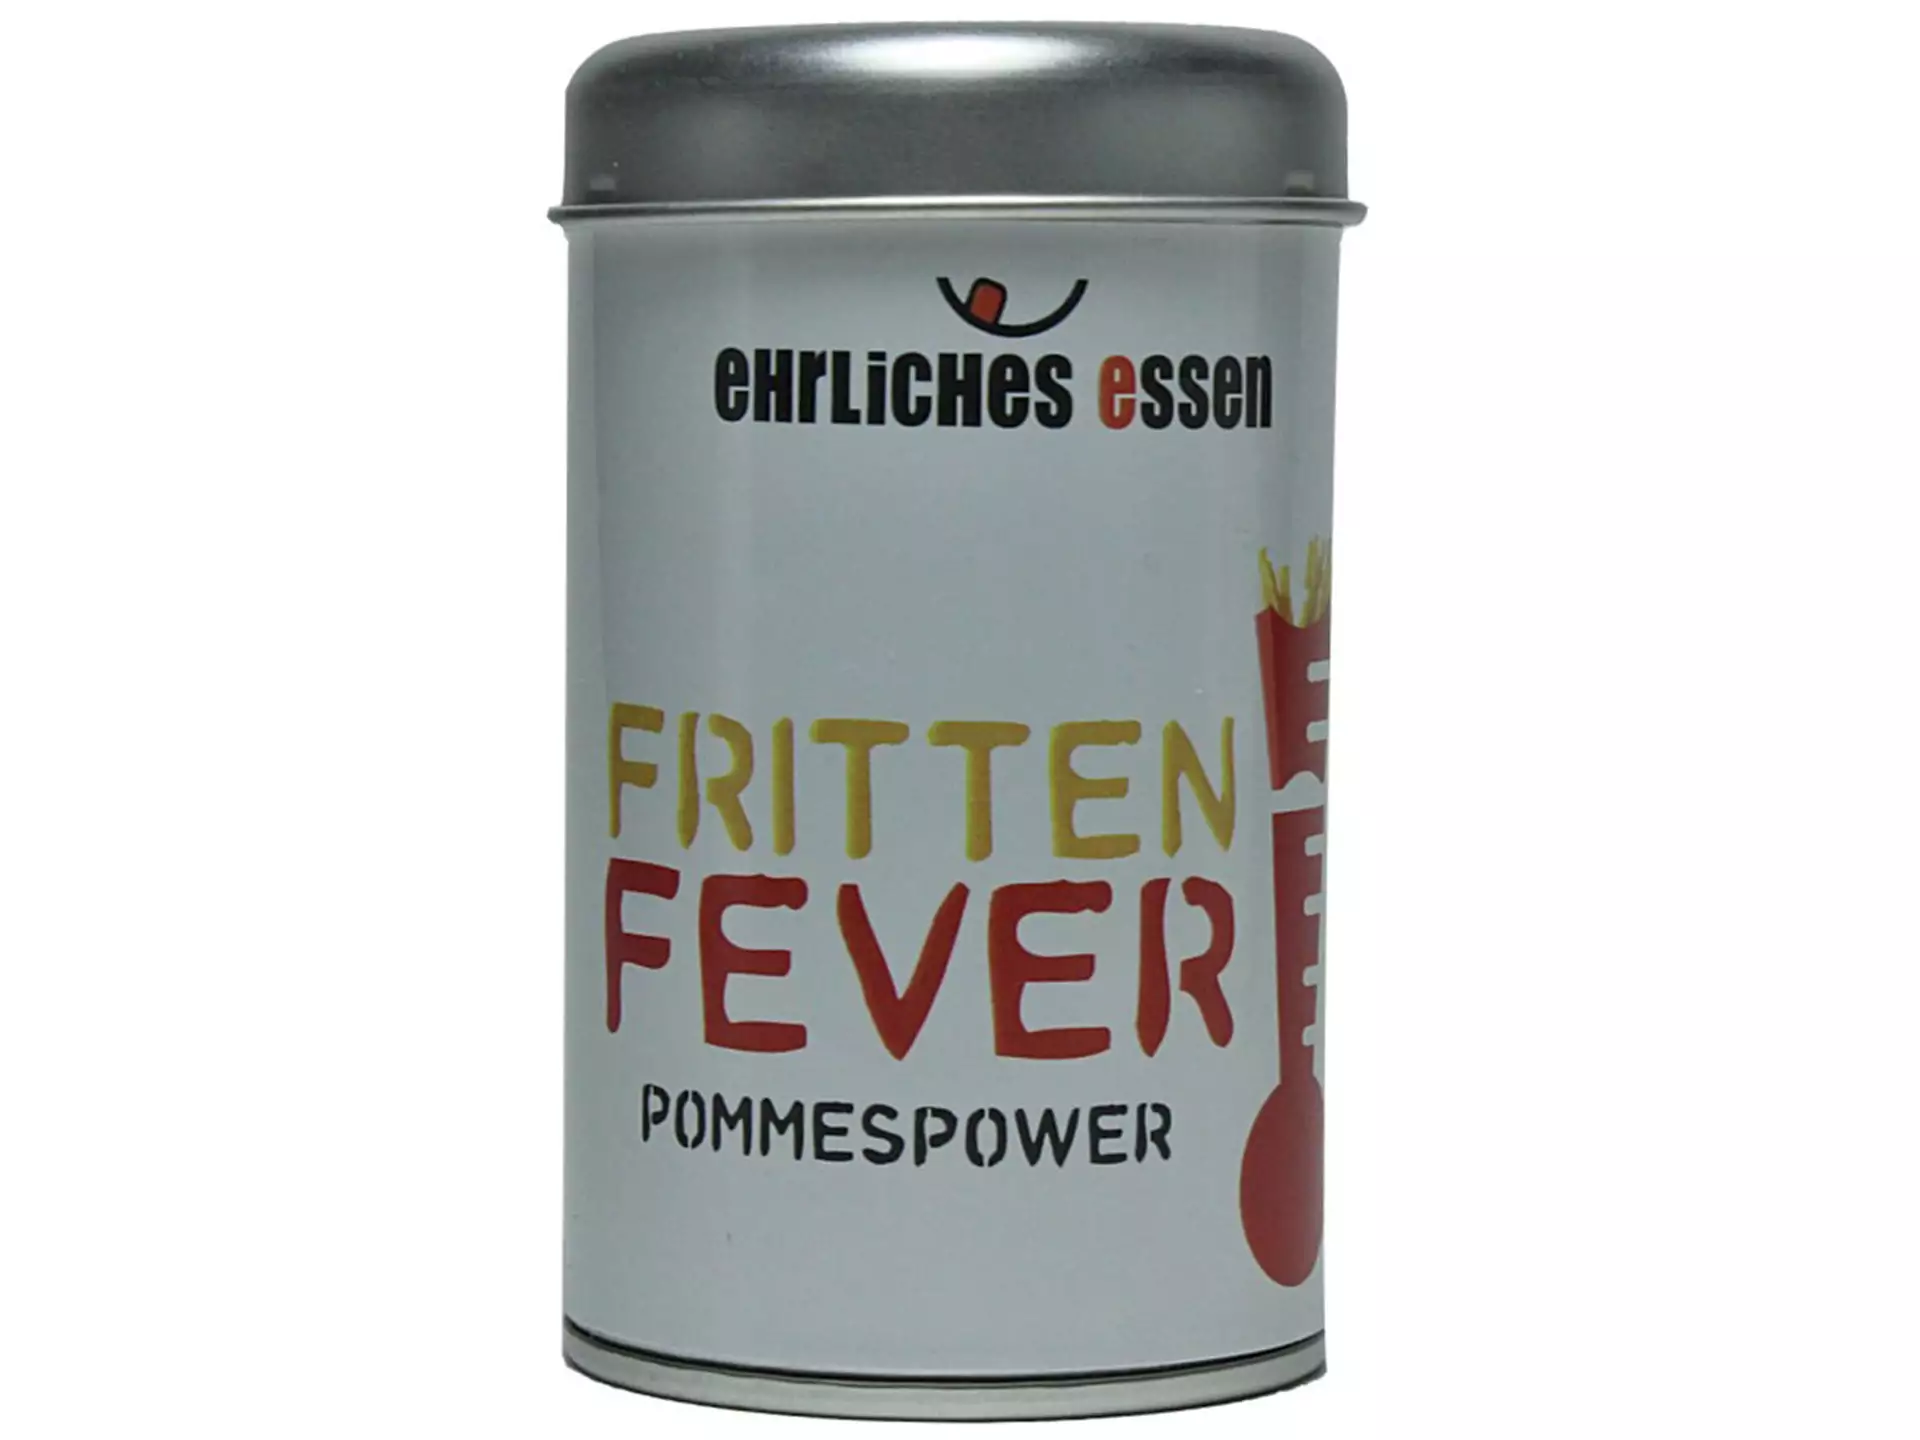 Gewürzmischung Fritten Fever 150 g Blaser und Trösch